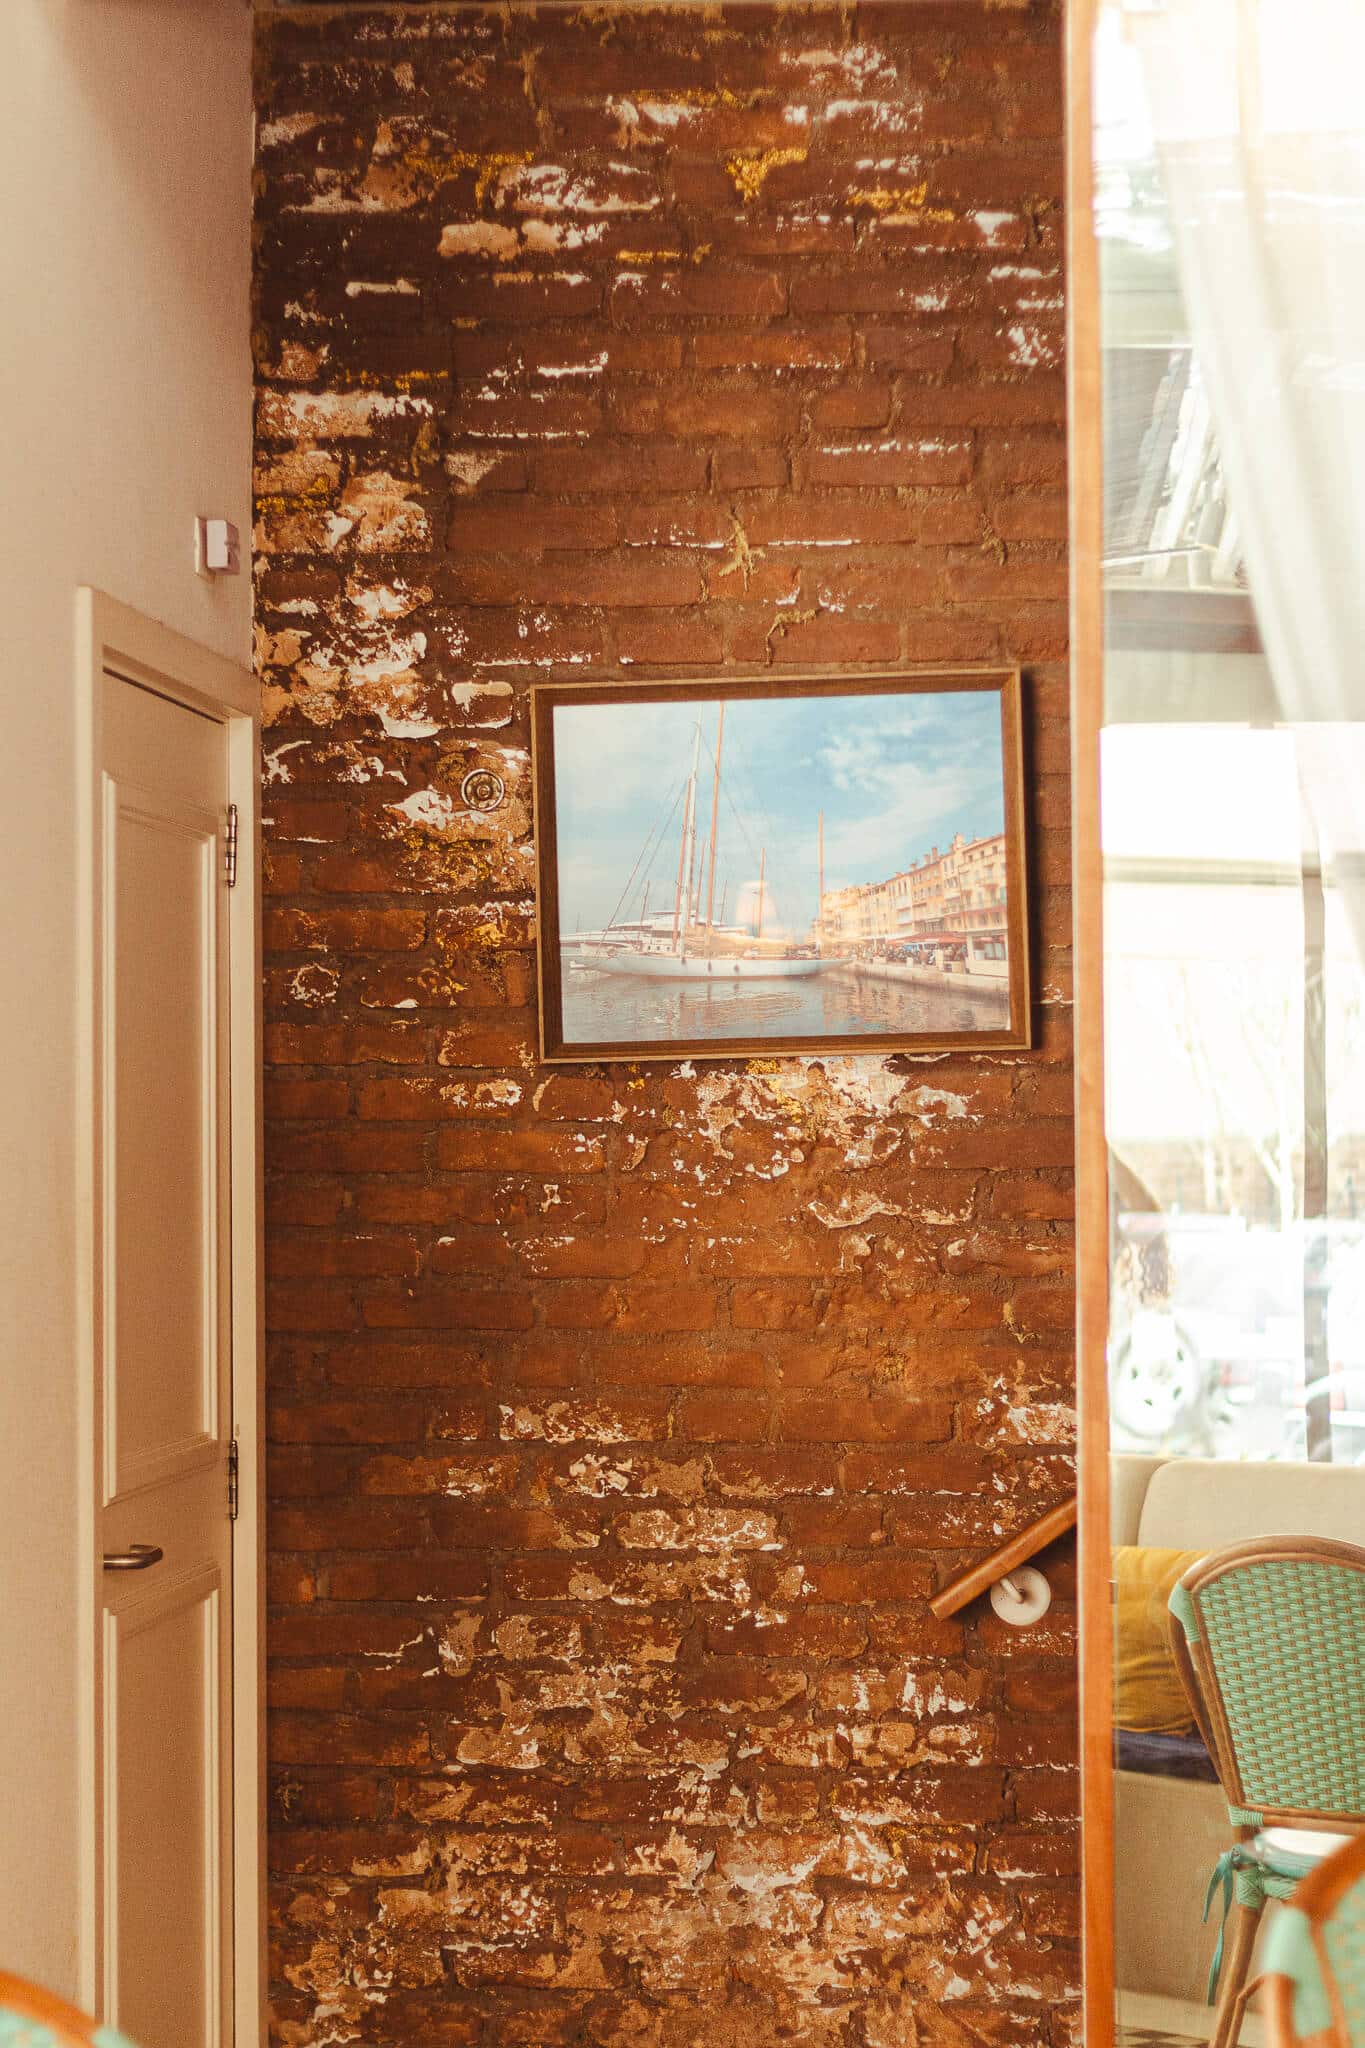 Ambiente interno do restaurante mostra uma parede rústica com um quadro pequeno que ocupa três palmos da parece. O quadro mostra uma arte mediterranea, com paisagem à beira-mar